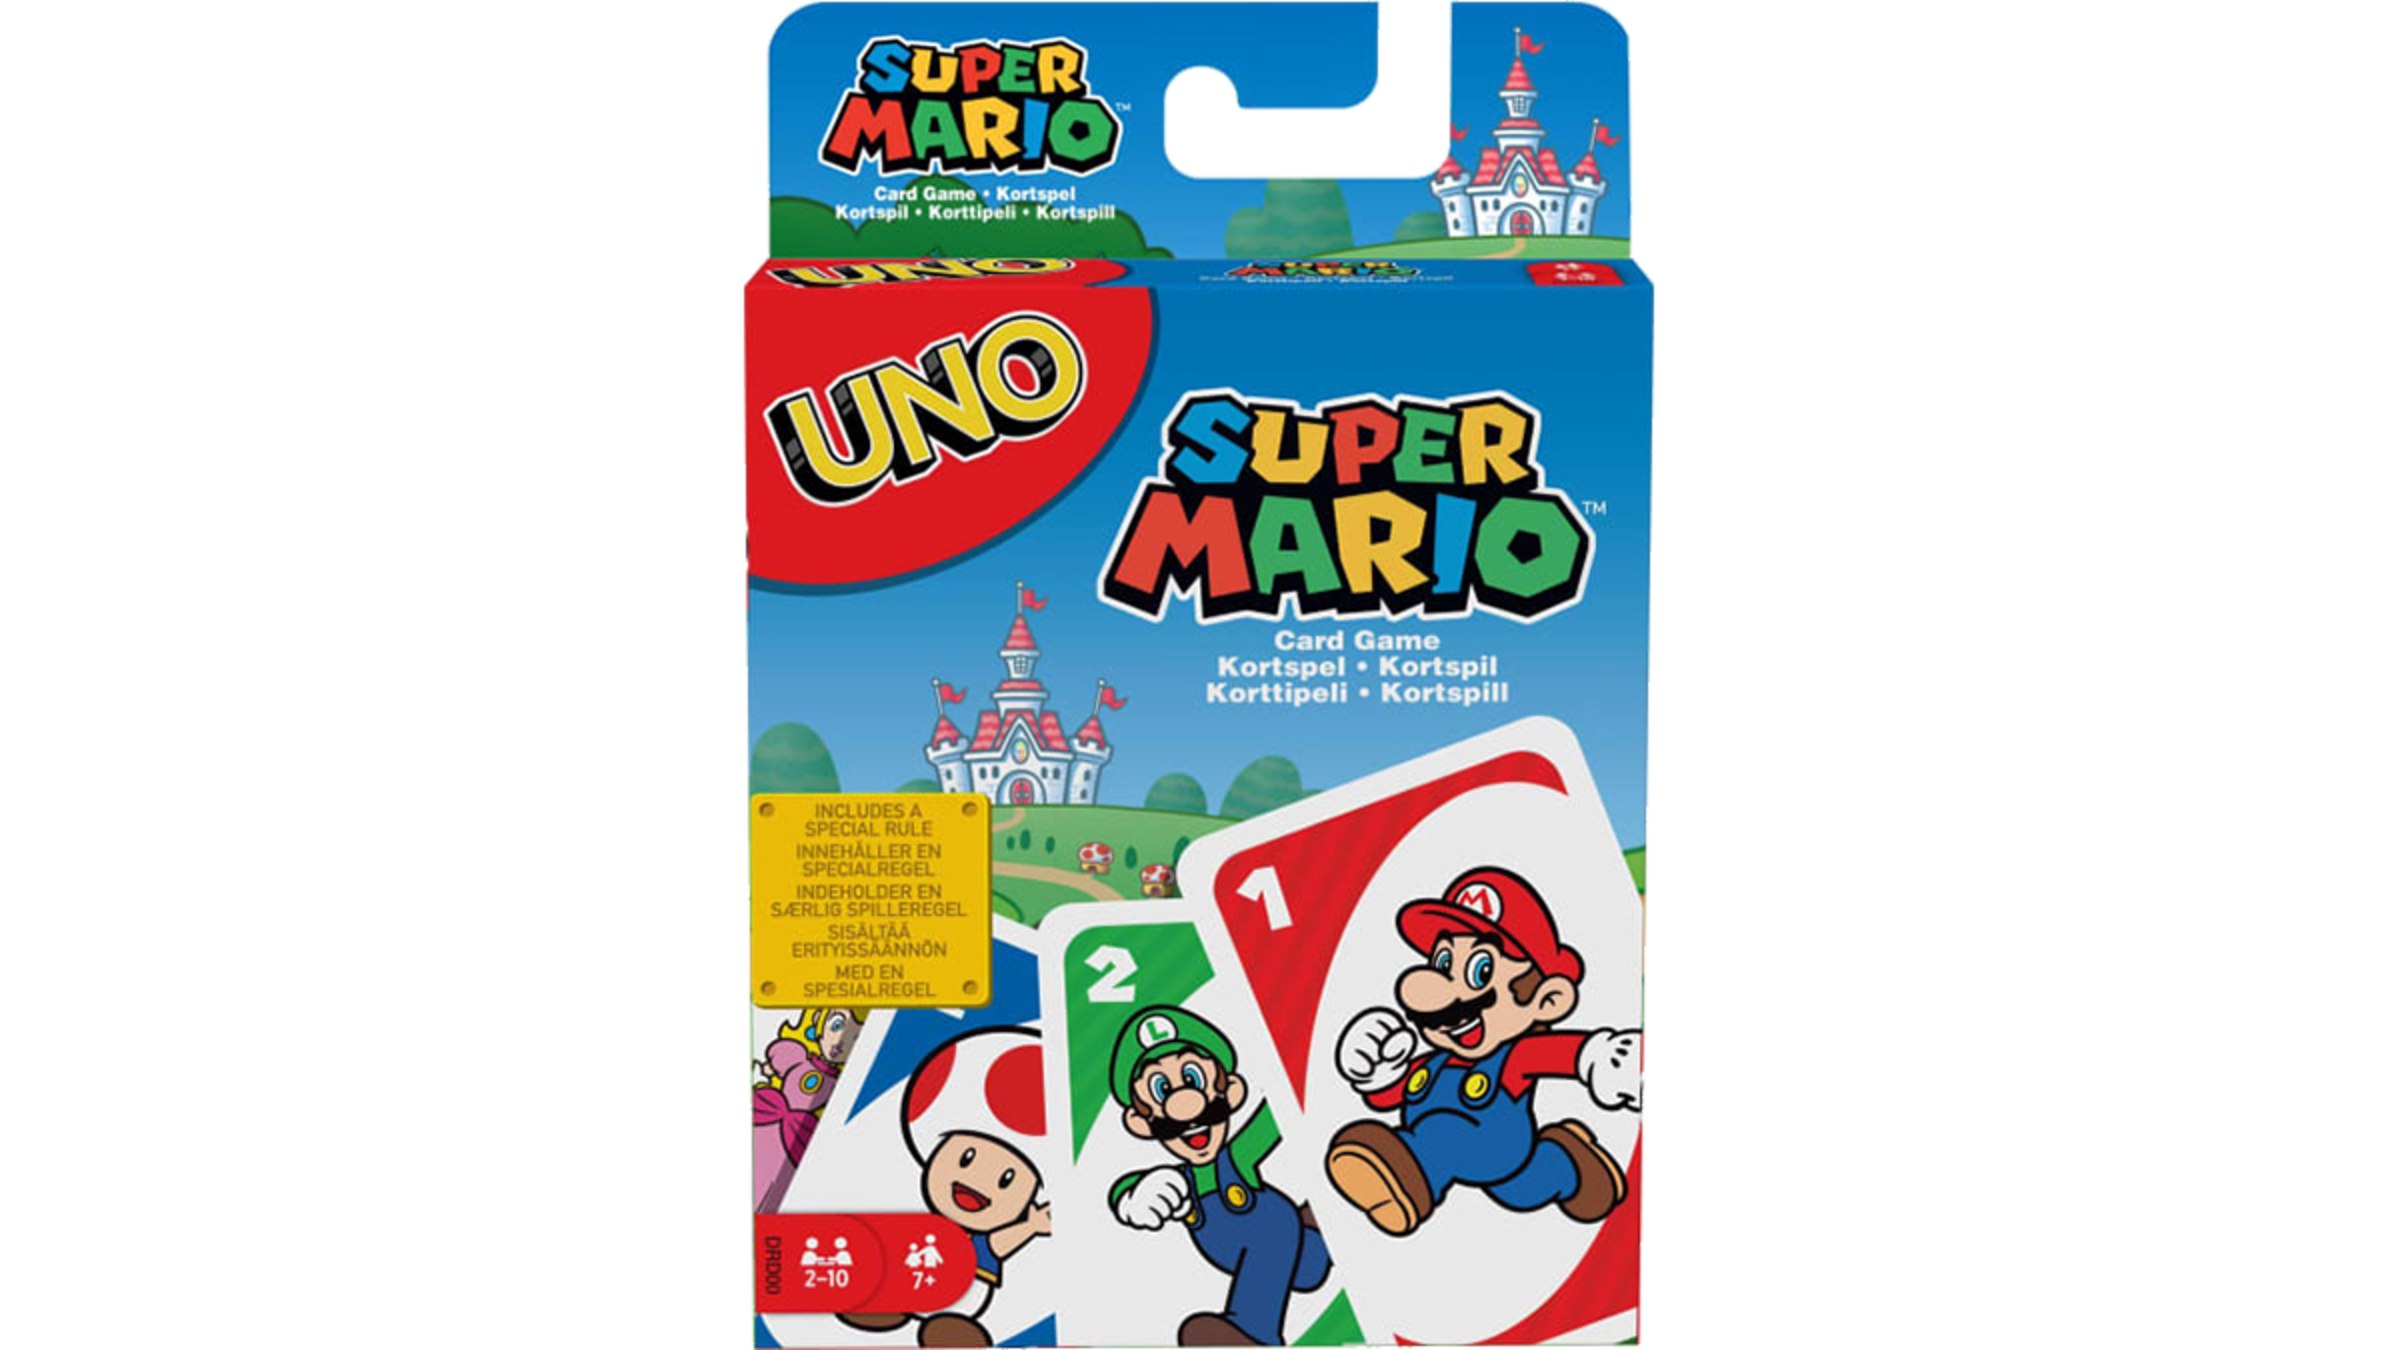 UNO - Super Mario Bros.